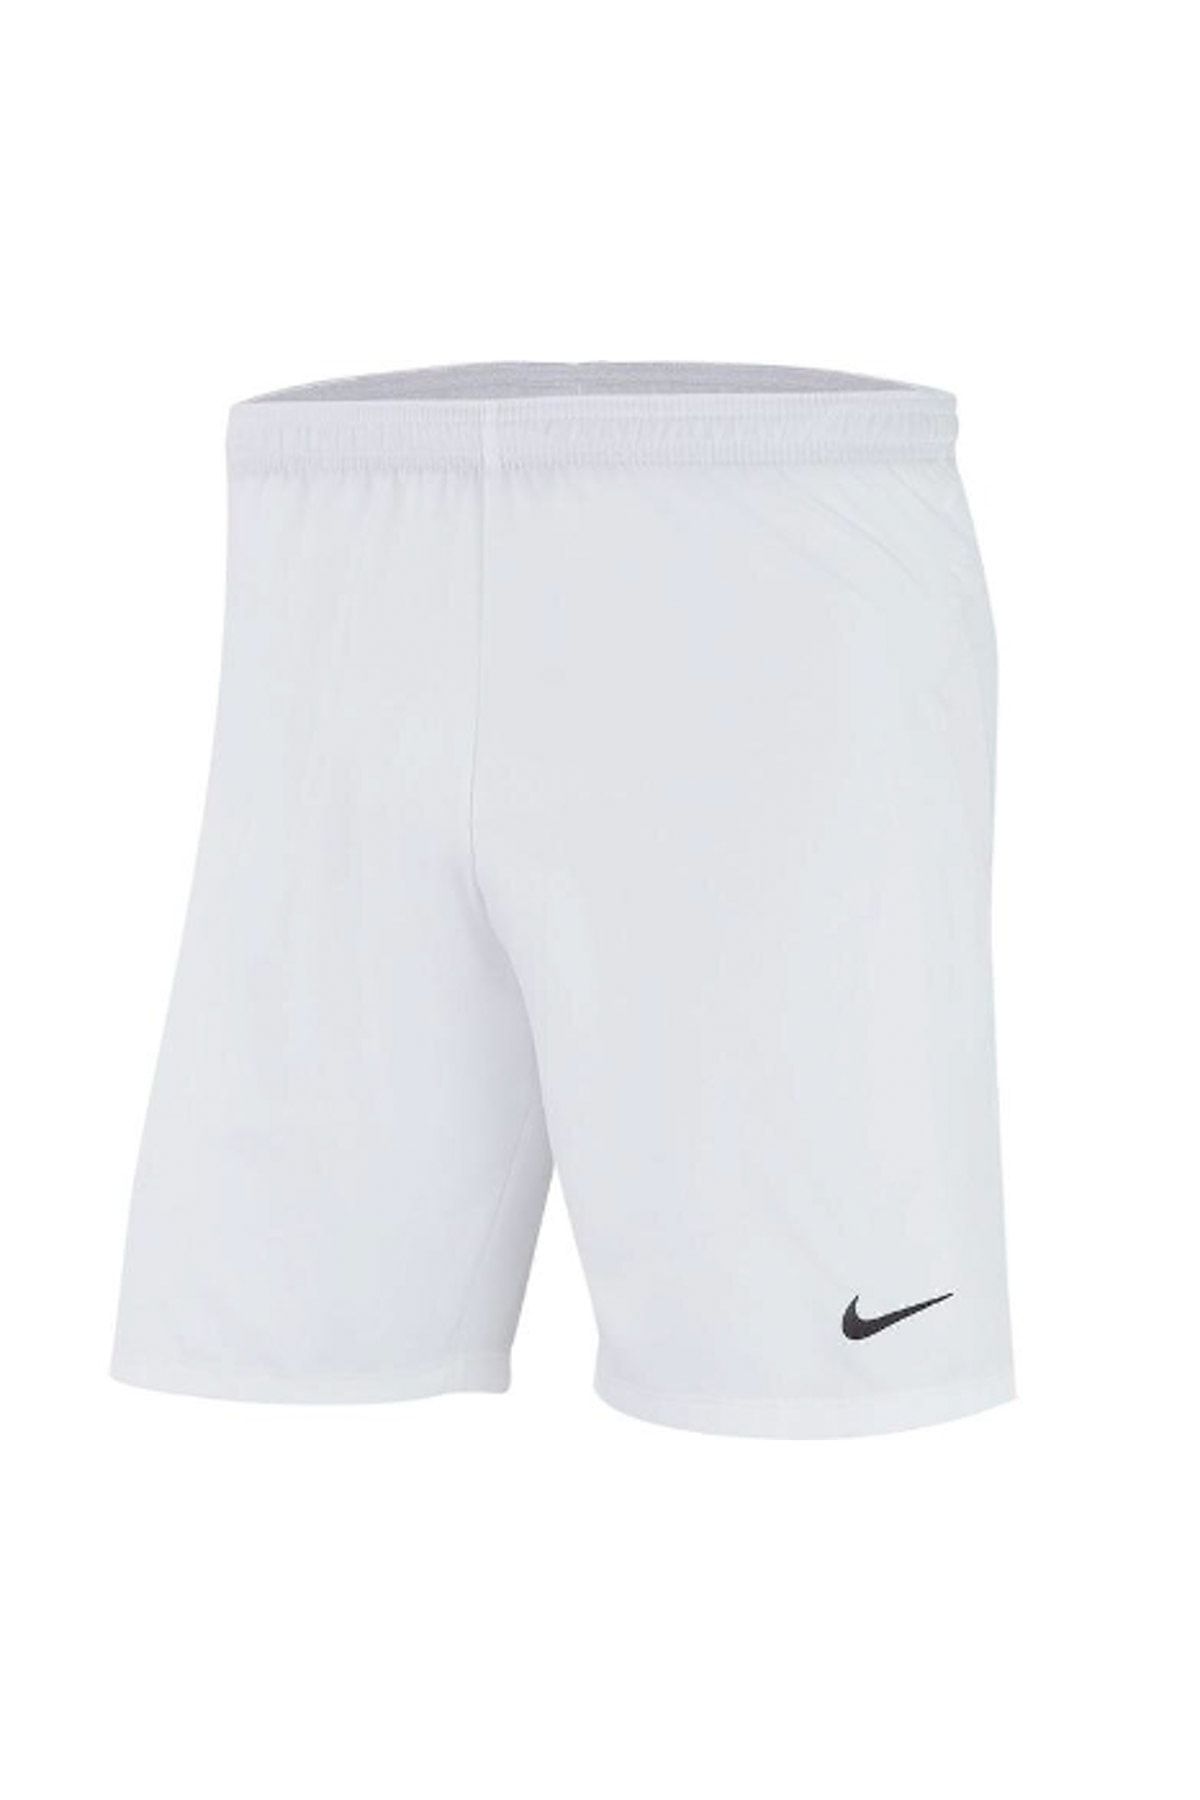 Nike Erkek Spor Şort - Laser IV Woven Short - AJ1245-100